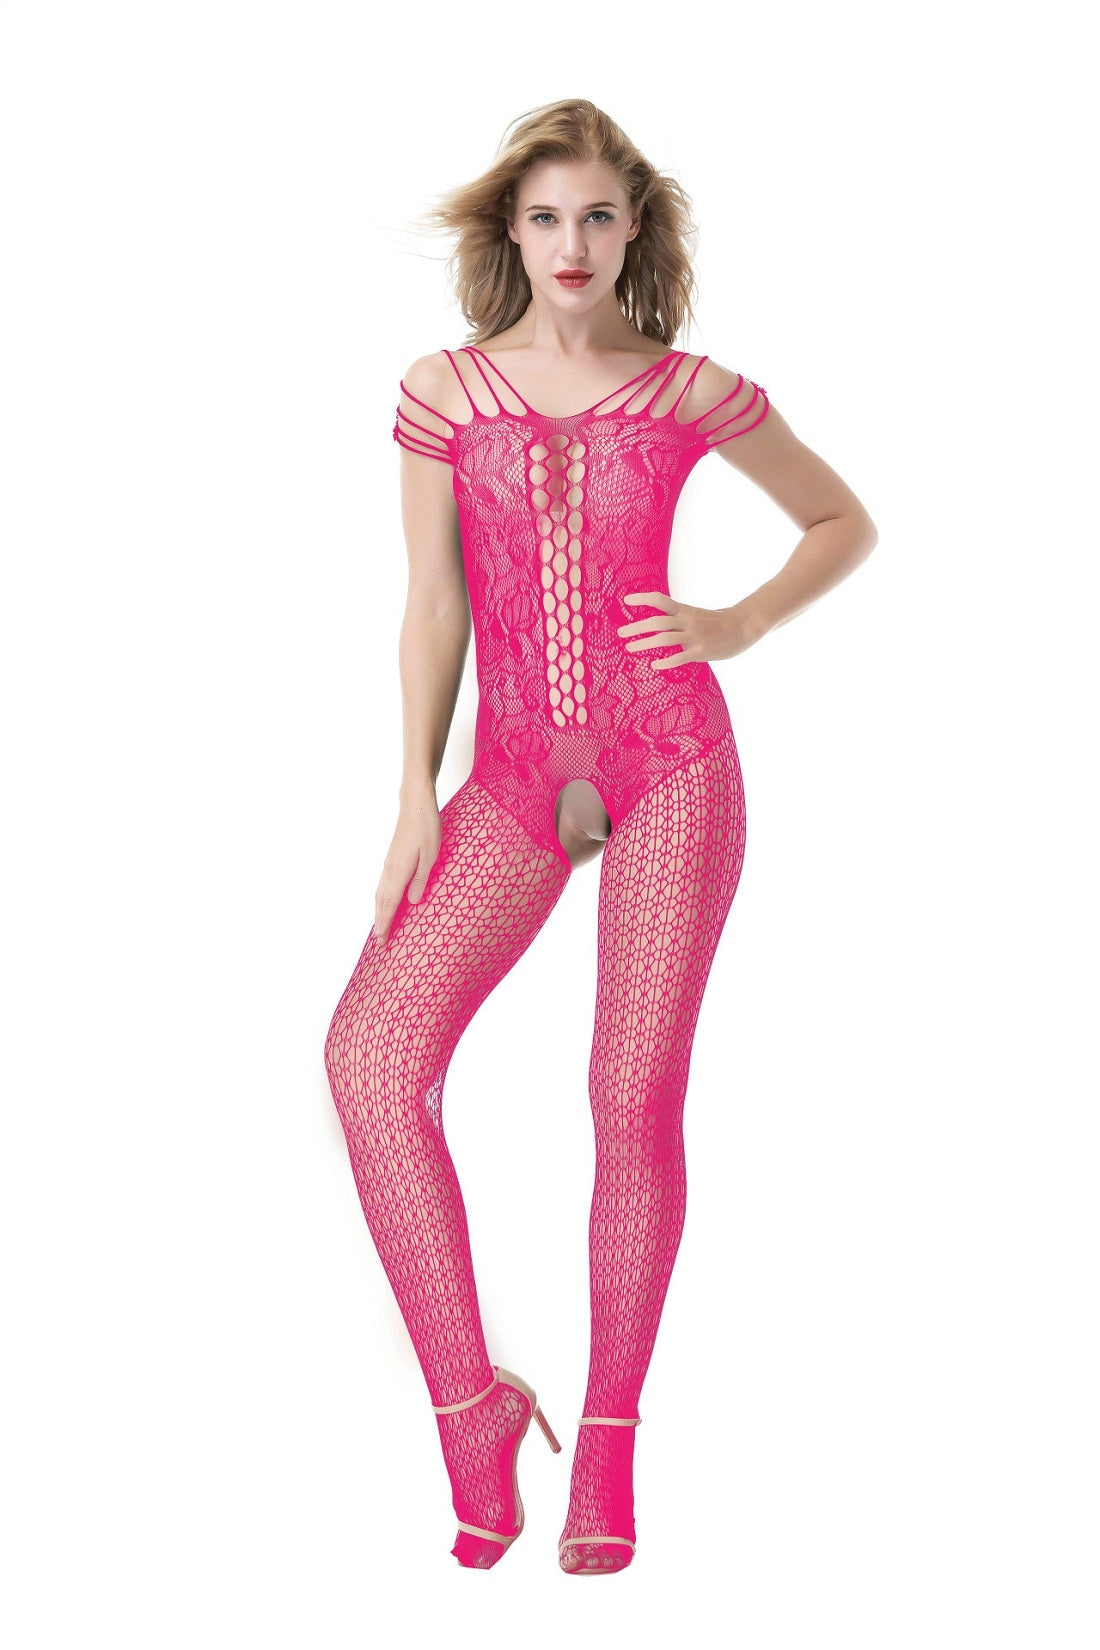 Kaamastra Dark Pink Fishnet Body Stockings & Free Thong